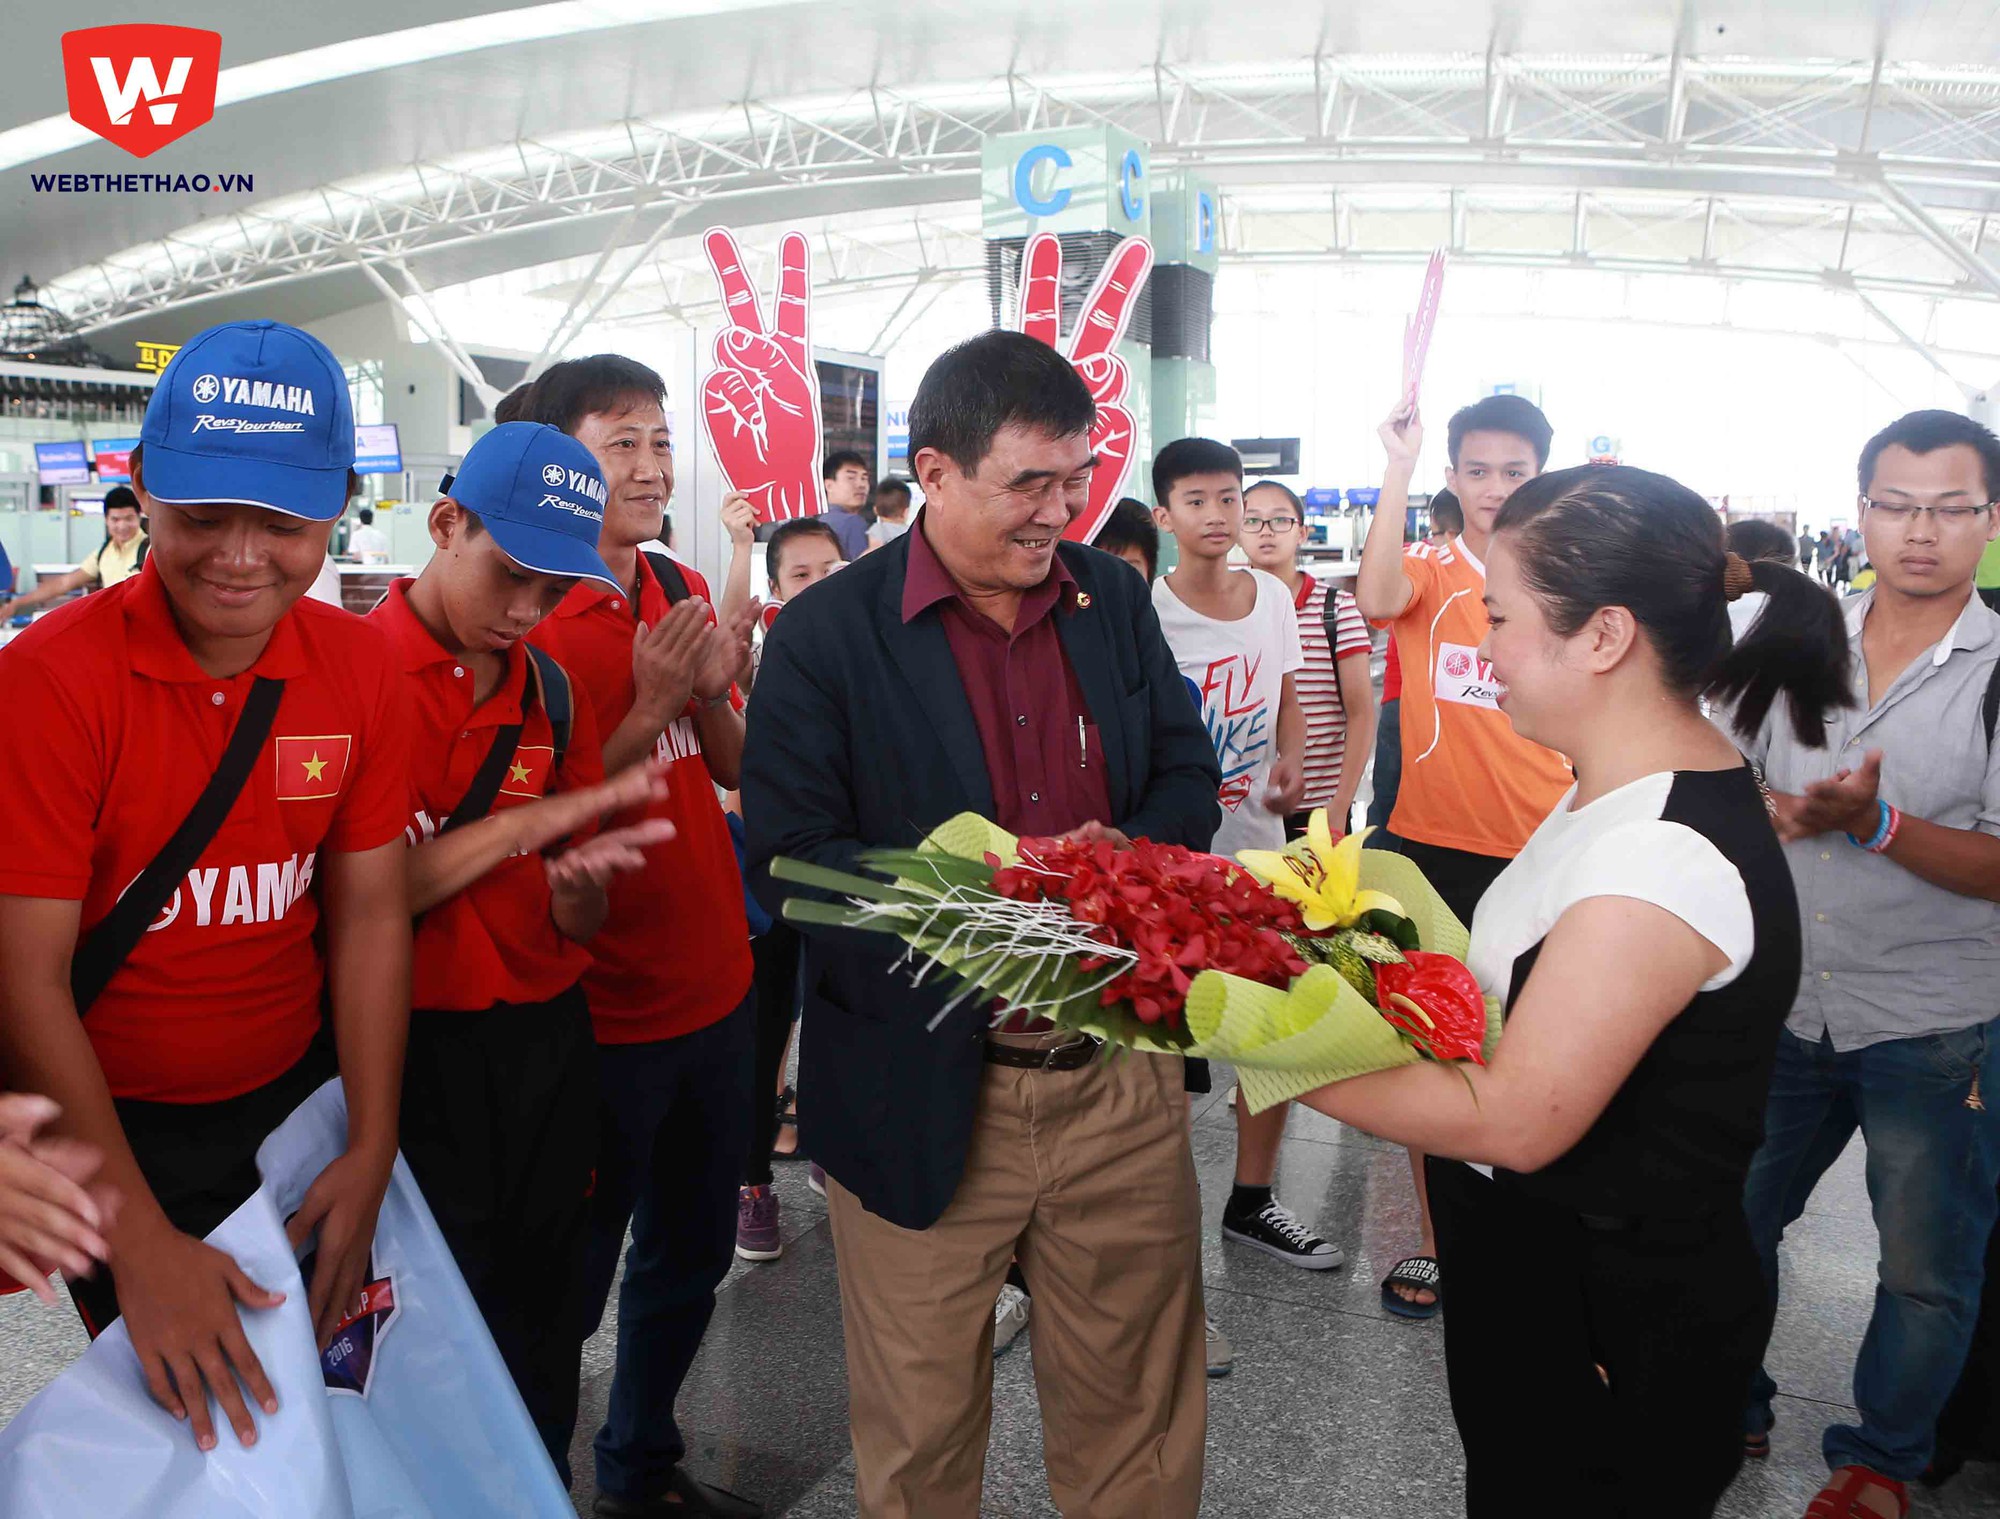 Bà Bùi Thu Hường, Phó TGĐ Công ty Cổ phần Thể thaco 24h tặng hoa và chúc cả đội lên đường may mắn.